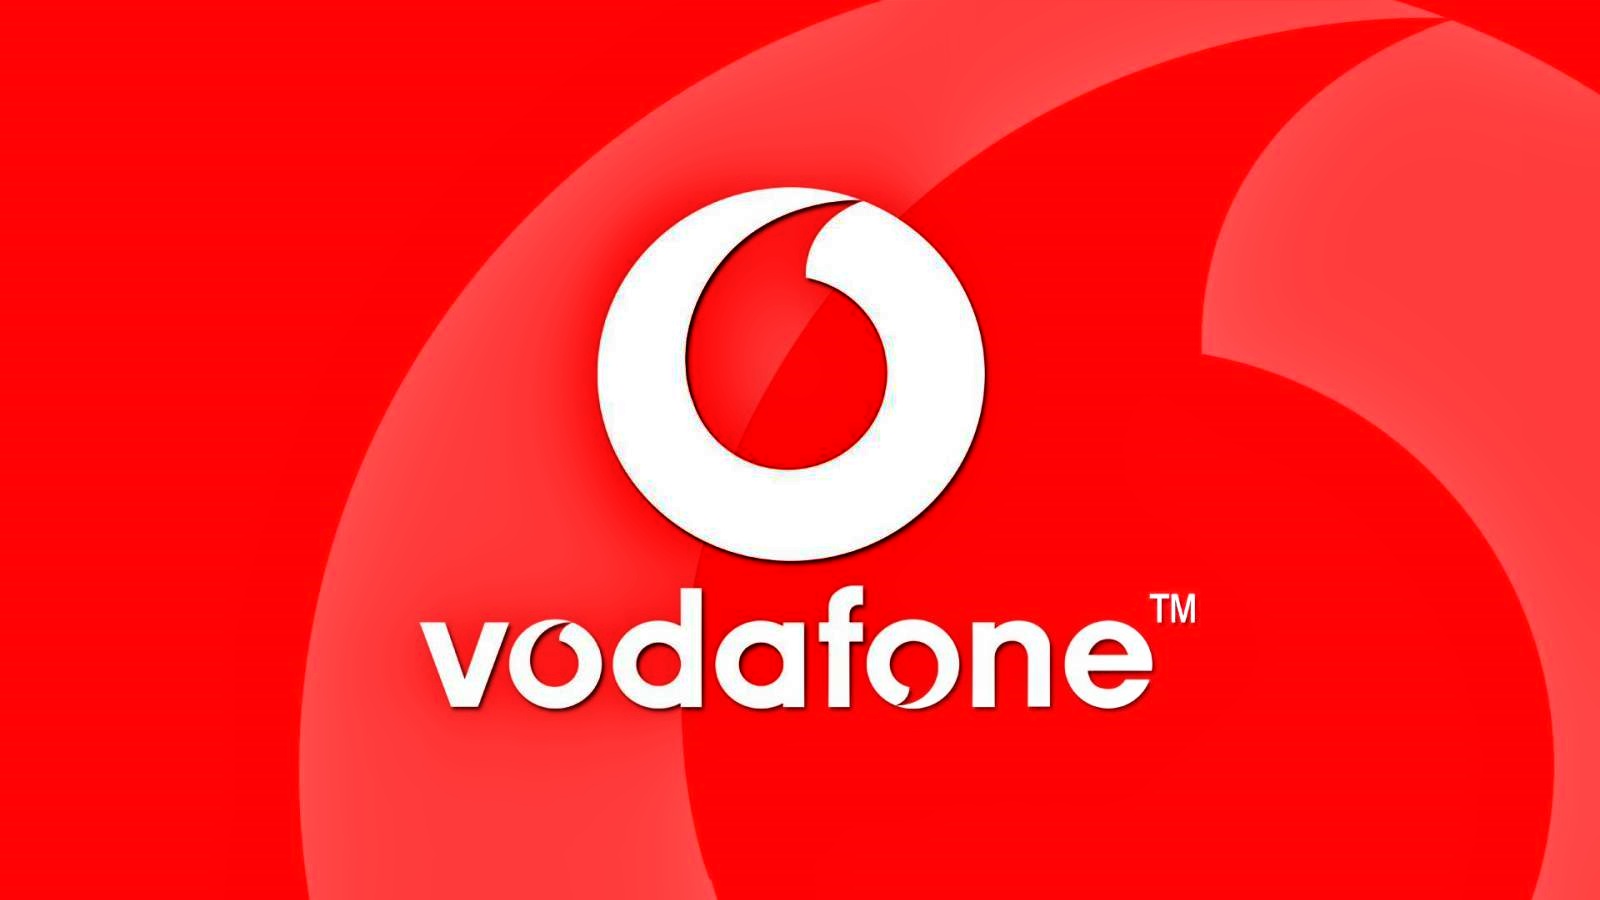 GRATIS Vodafone MILLIONER kunder Hele Rumænien